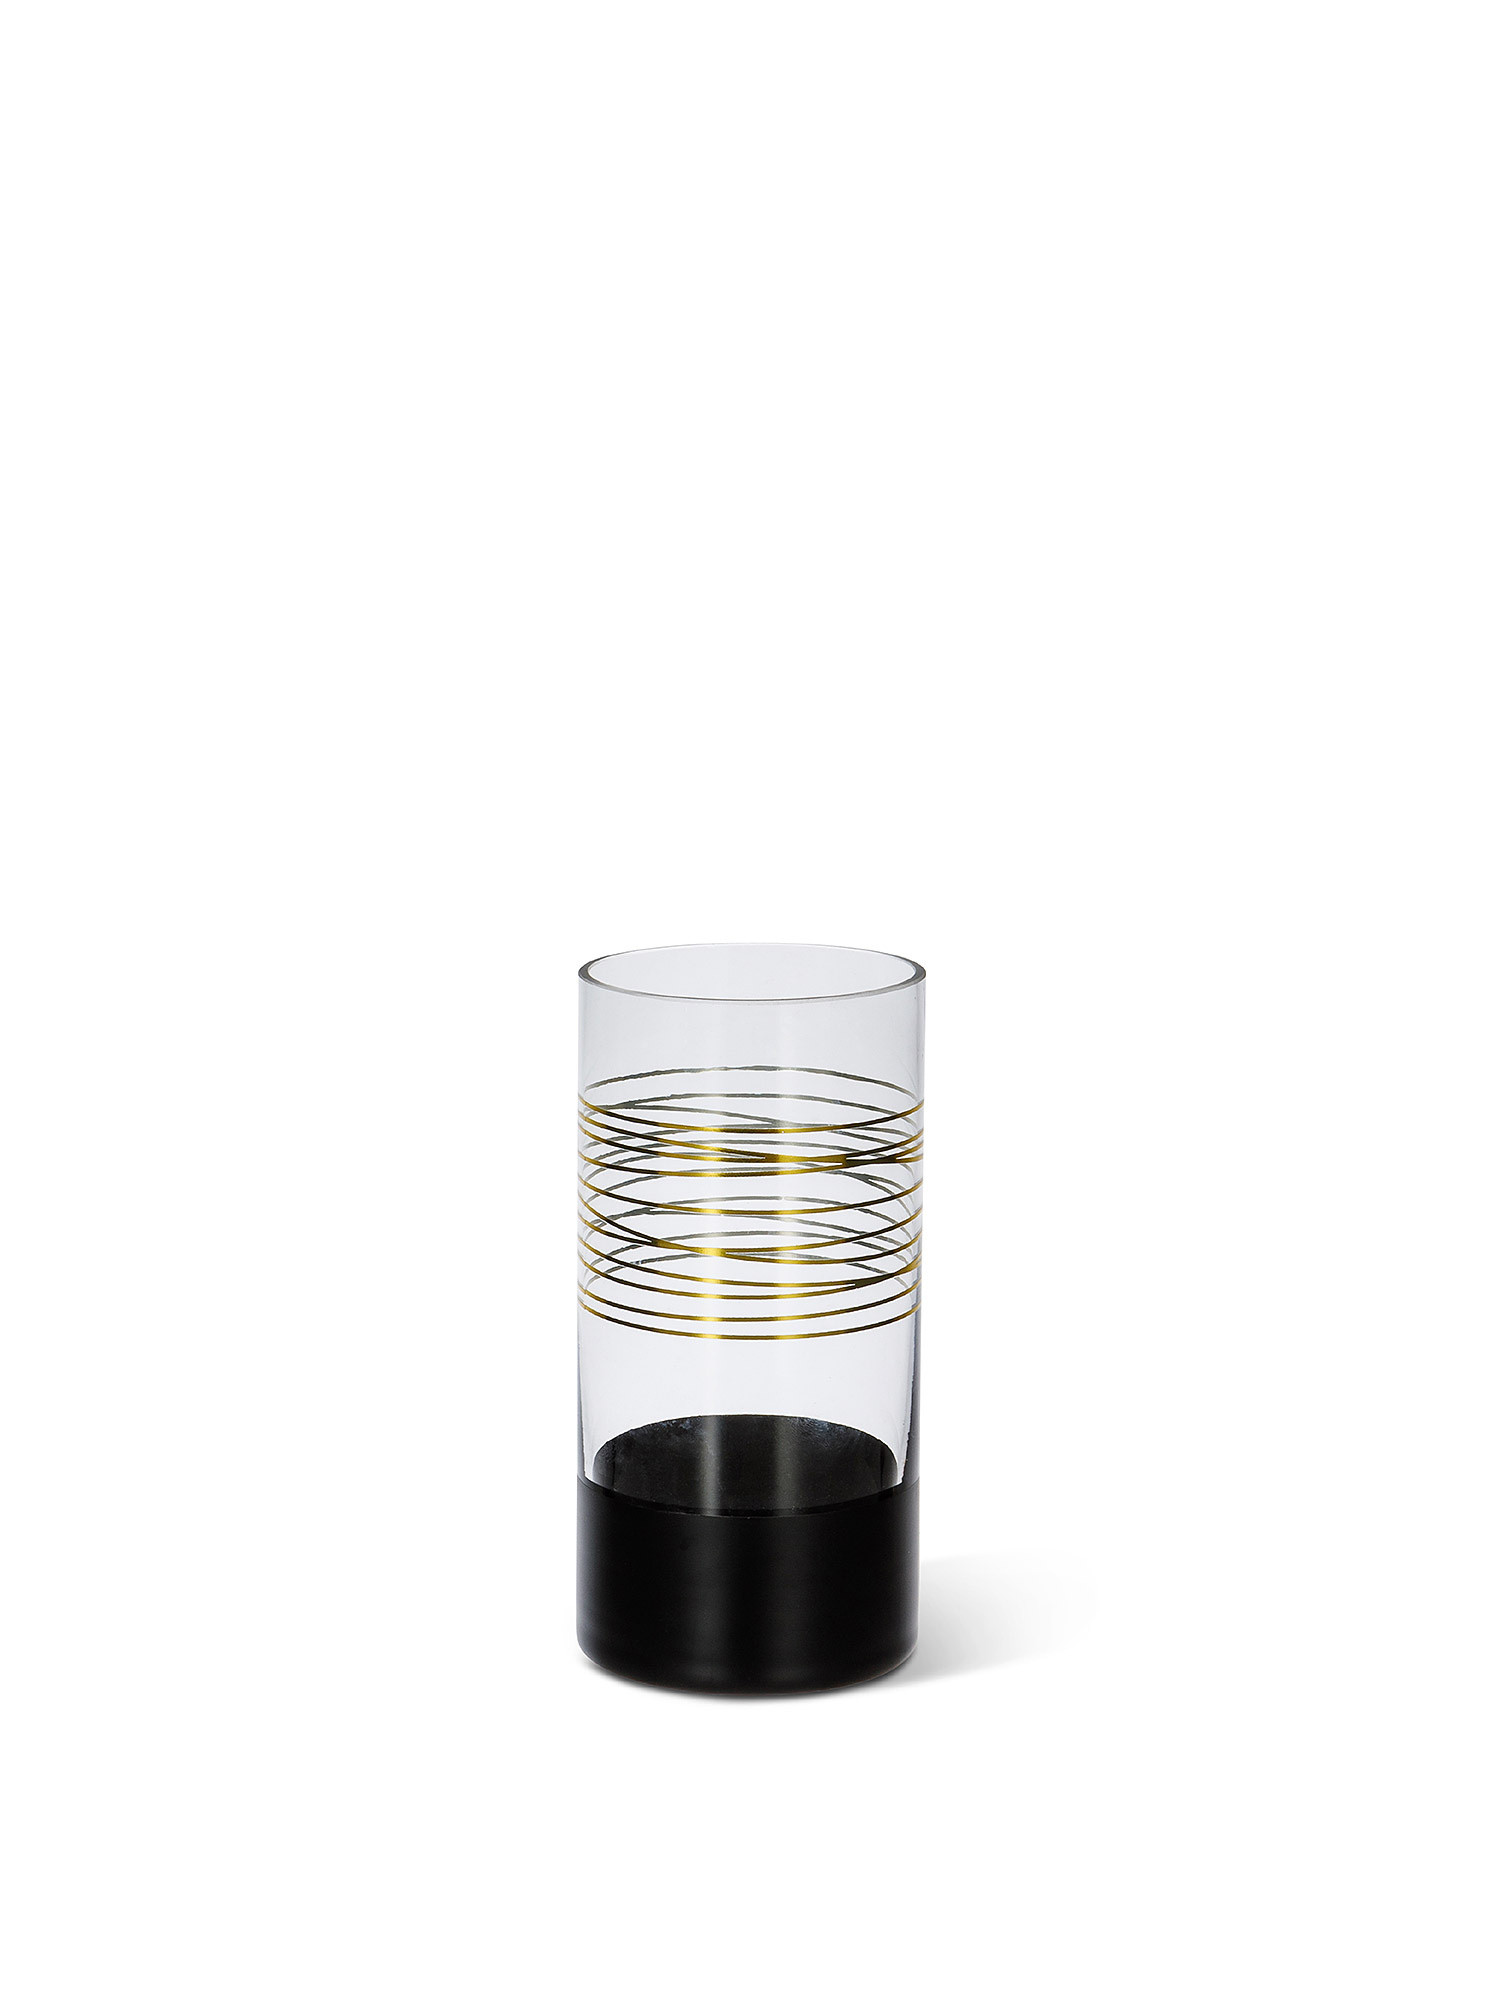 Glass vase with black and gold details, Transparent, large image number 0